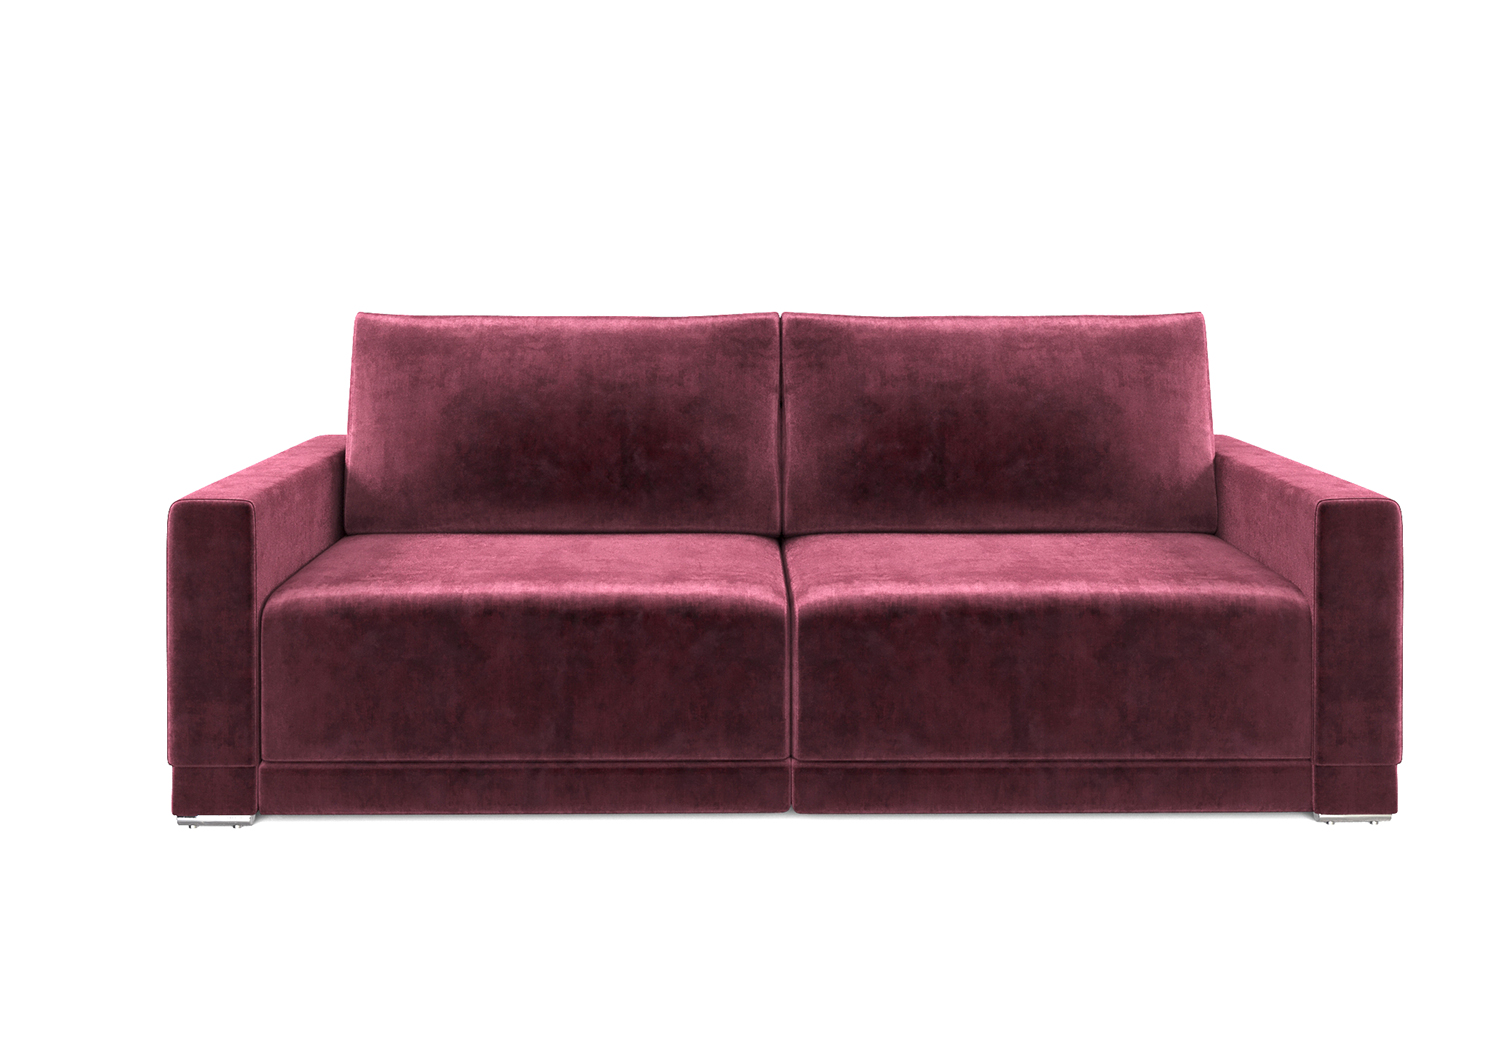 Мартин, прямой диван, Marseille burgundy ткань Шенилл цвет Бордовый механизм трансформации Еврокнижка изображение 4